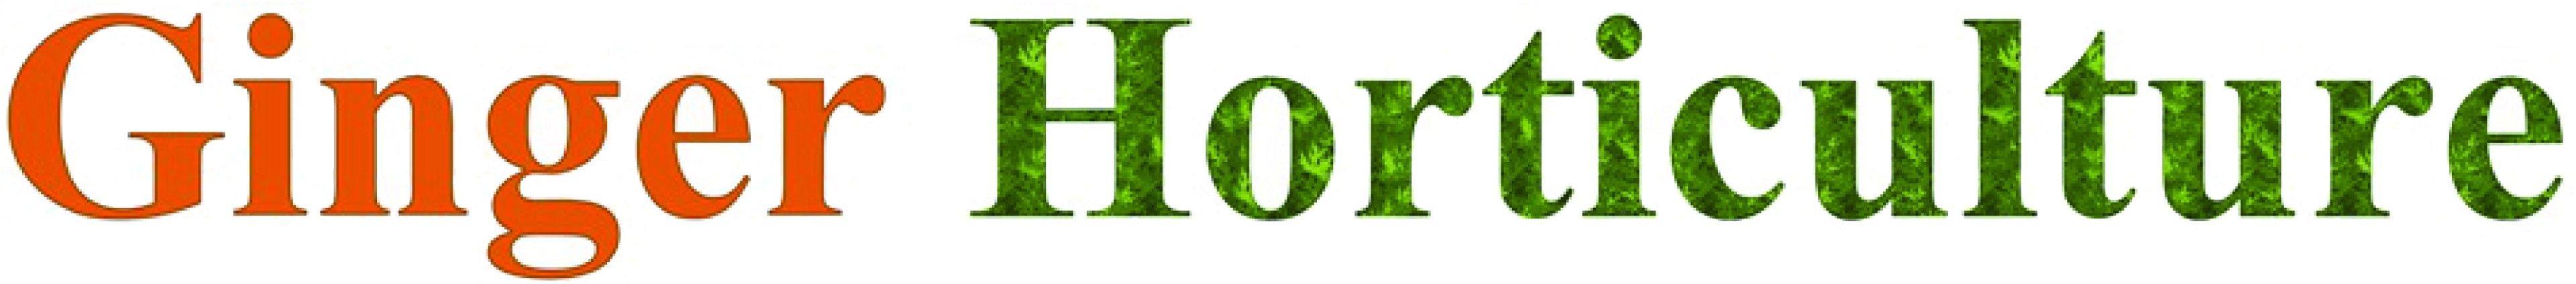 Ginger Horticulture Ltd logo